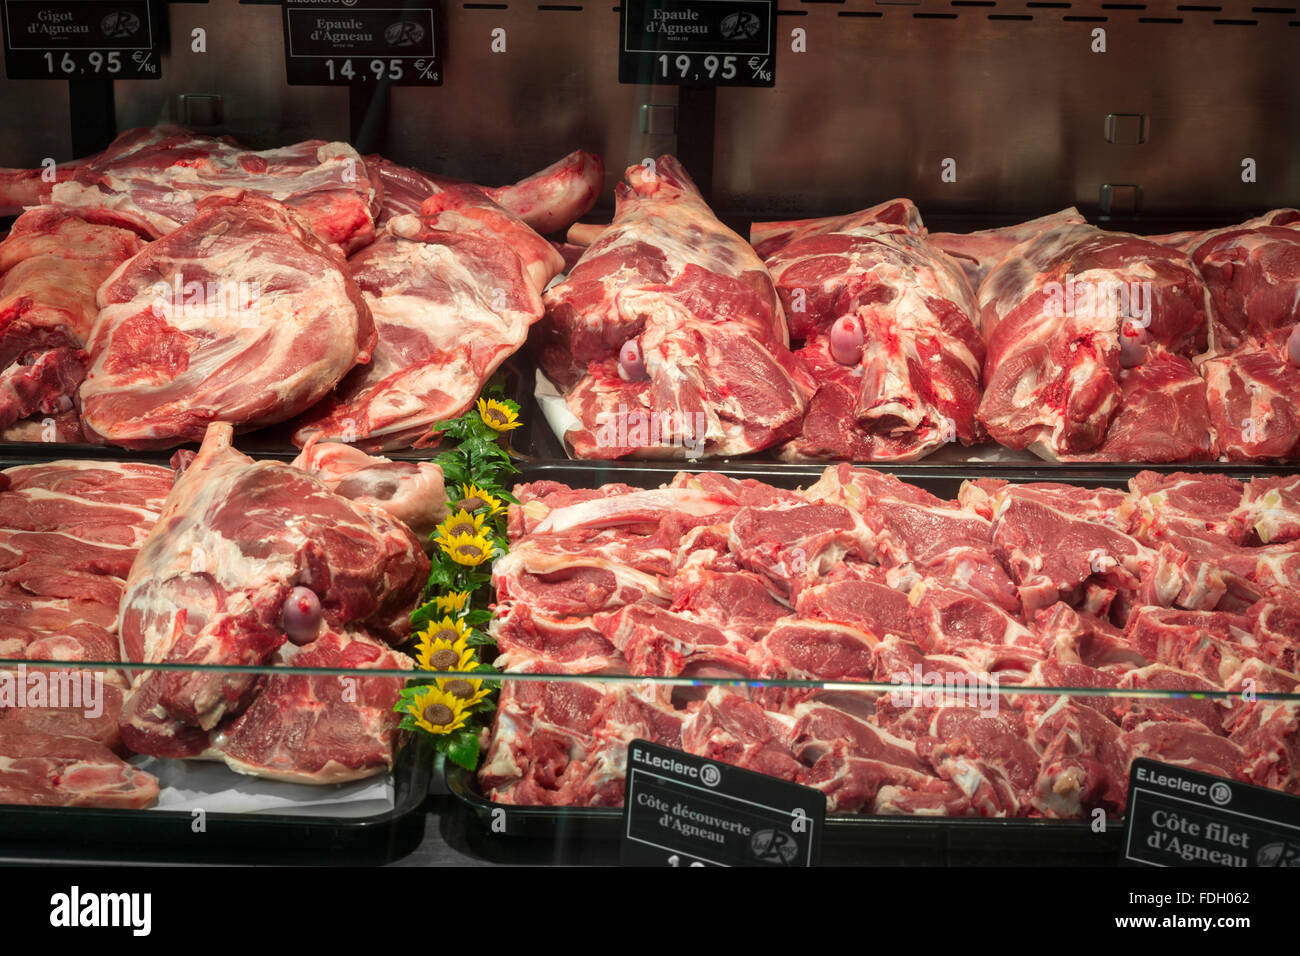 Lammfleisch auf Metzgerei Stall (Frankreich) Alamy Lamm Fleisch - Zähler einem Metzger-Shop Stockfotografie angezeigt. in Ein